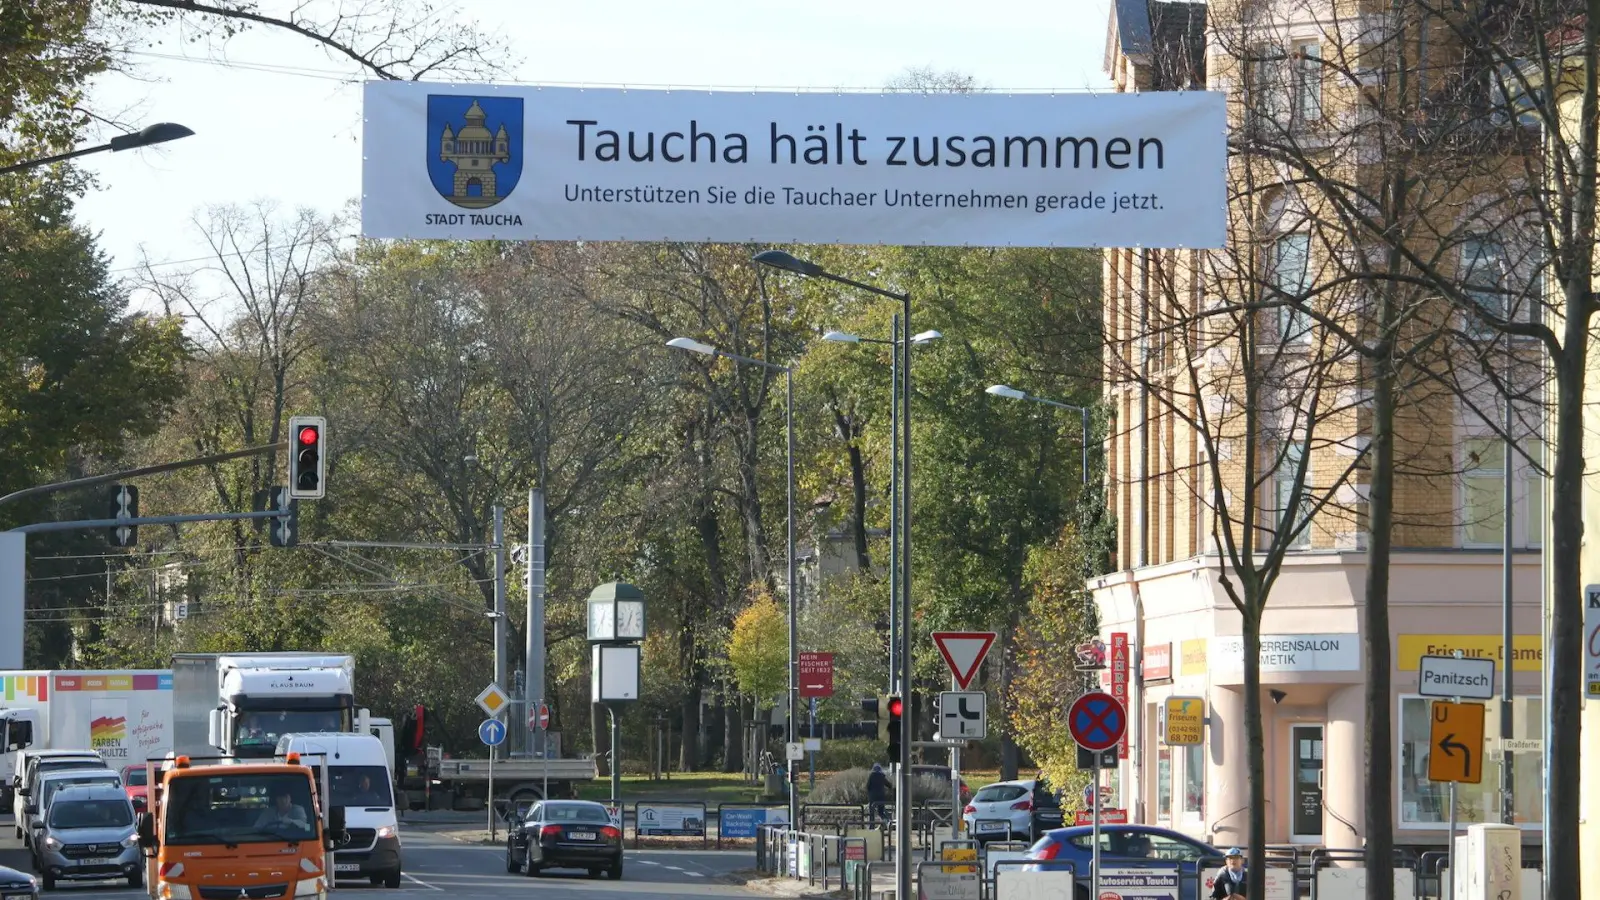 Neue Durchhalte-Parole der Stadtverwaltung (Foto: taucha-kompakt.de)